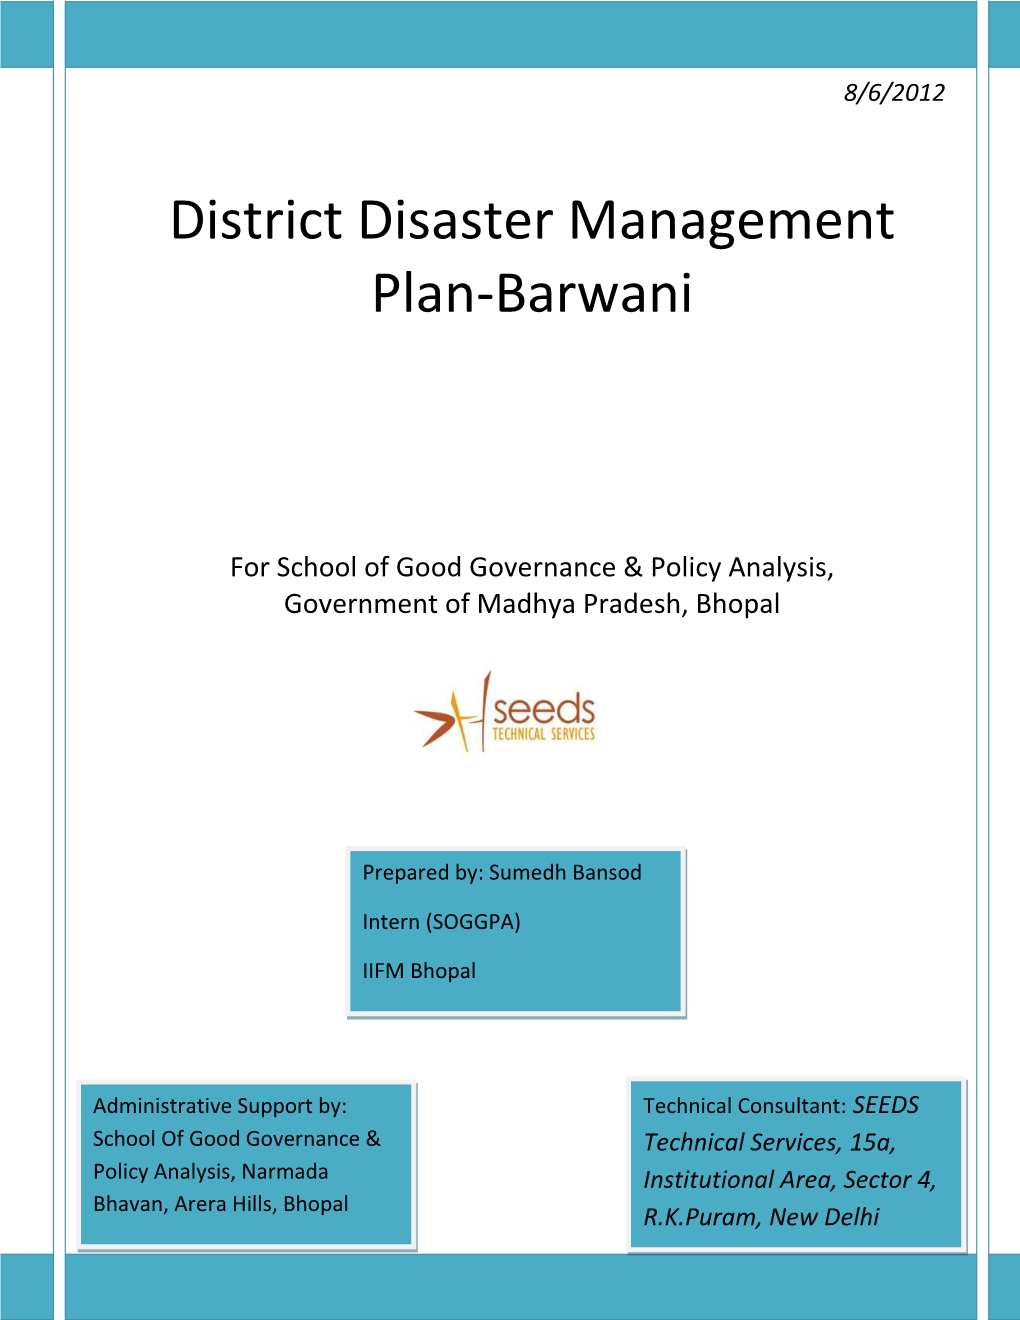 District Disaster Management Plan-Barwani